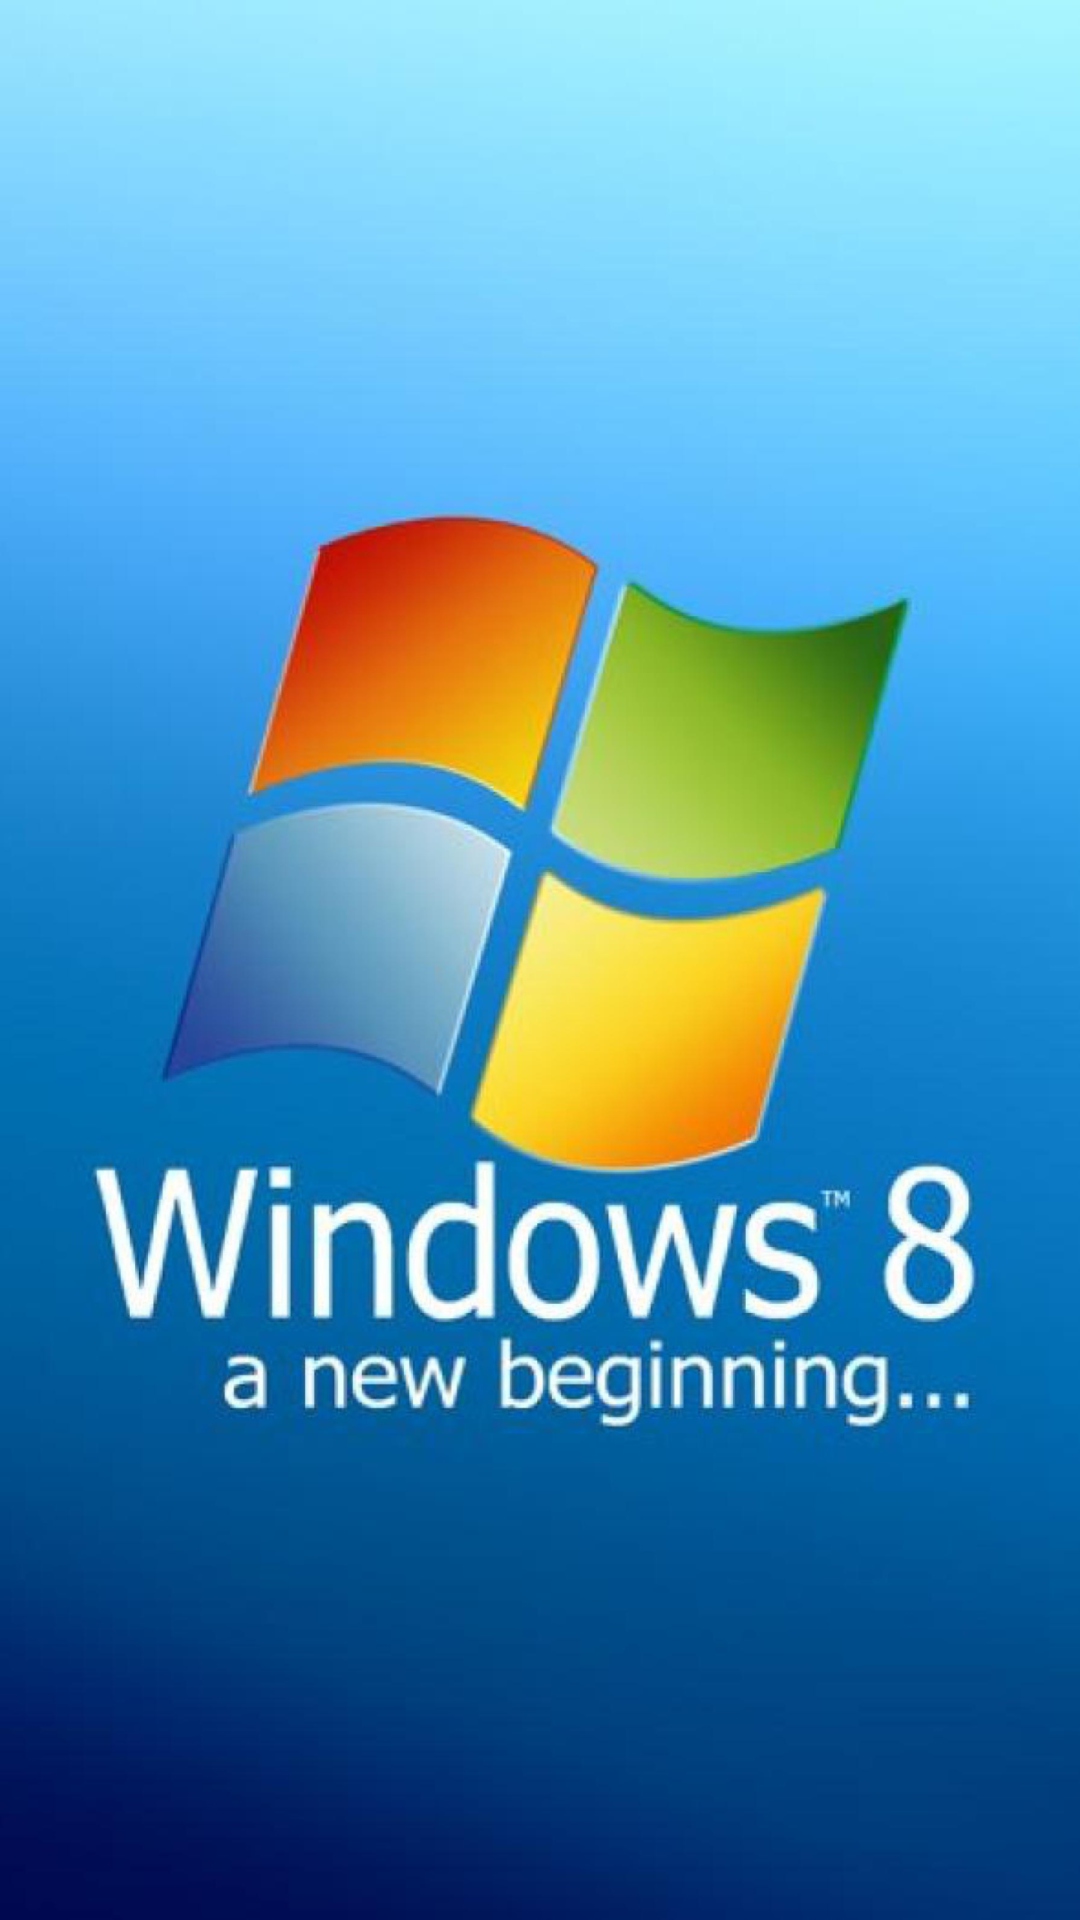 Das A New Beginning Windows 8 Wallpaper 1080x1920